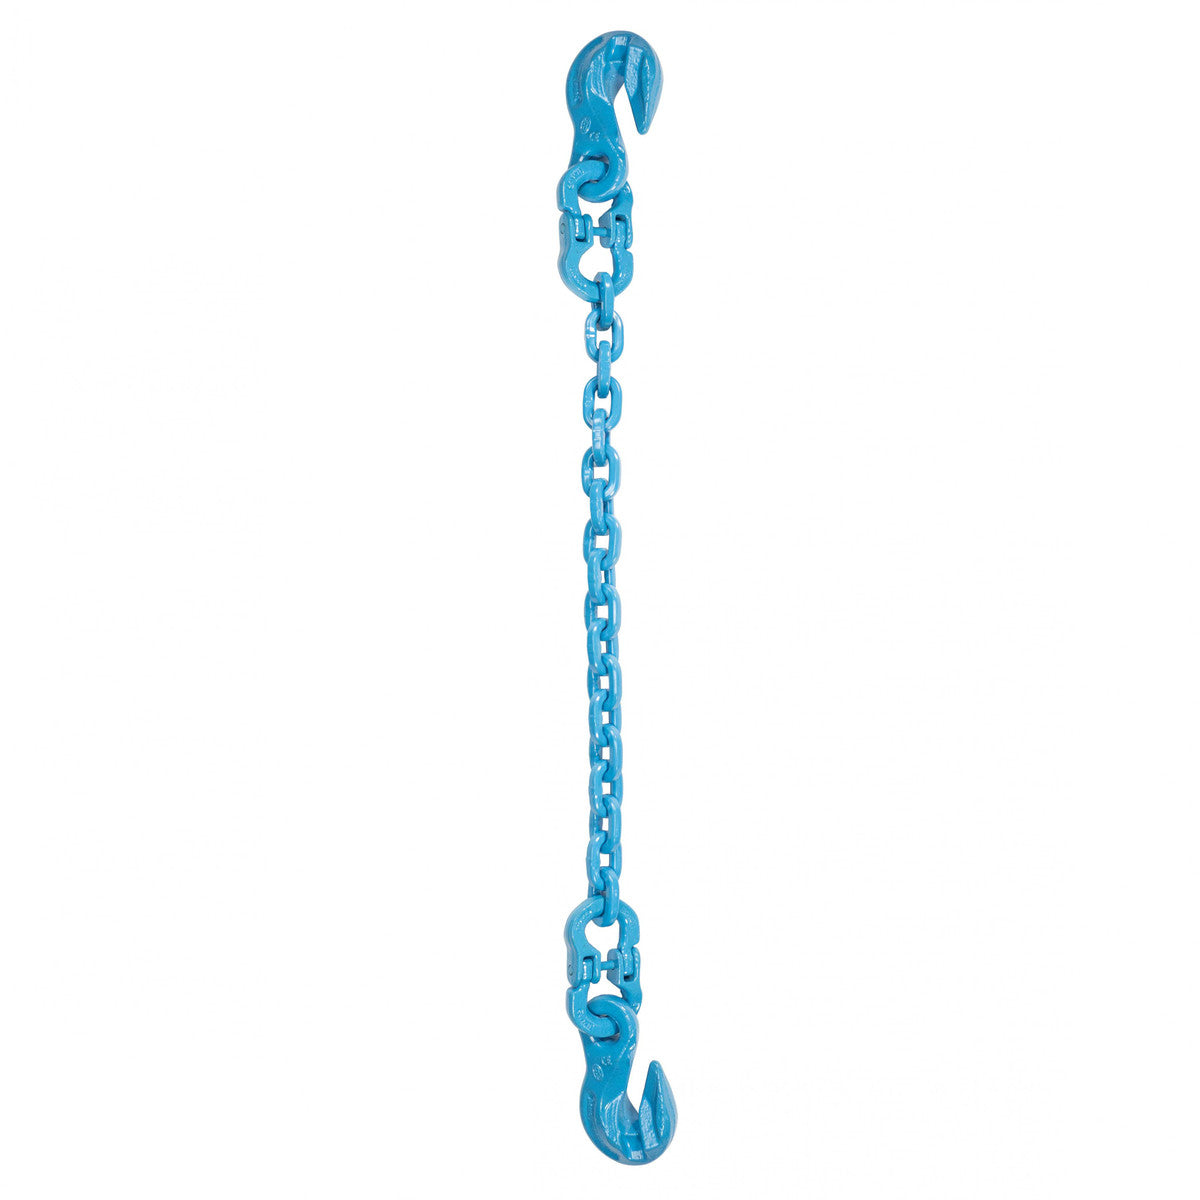 1/2" x 5' - Pewag Single Leg Chain Sling w/ Grab & Grab Hooks - Grade 120